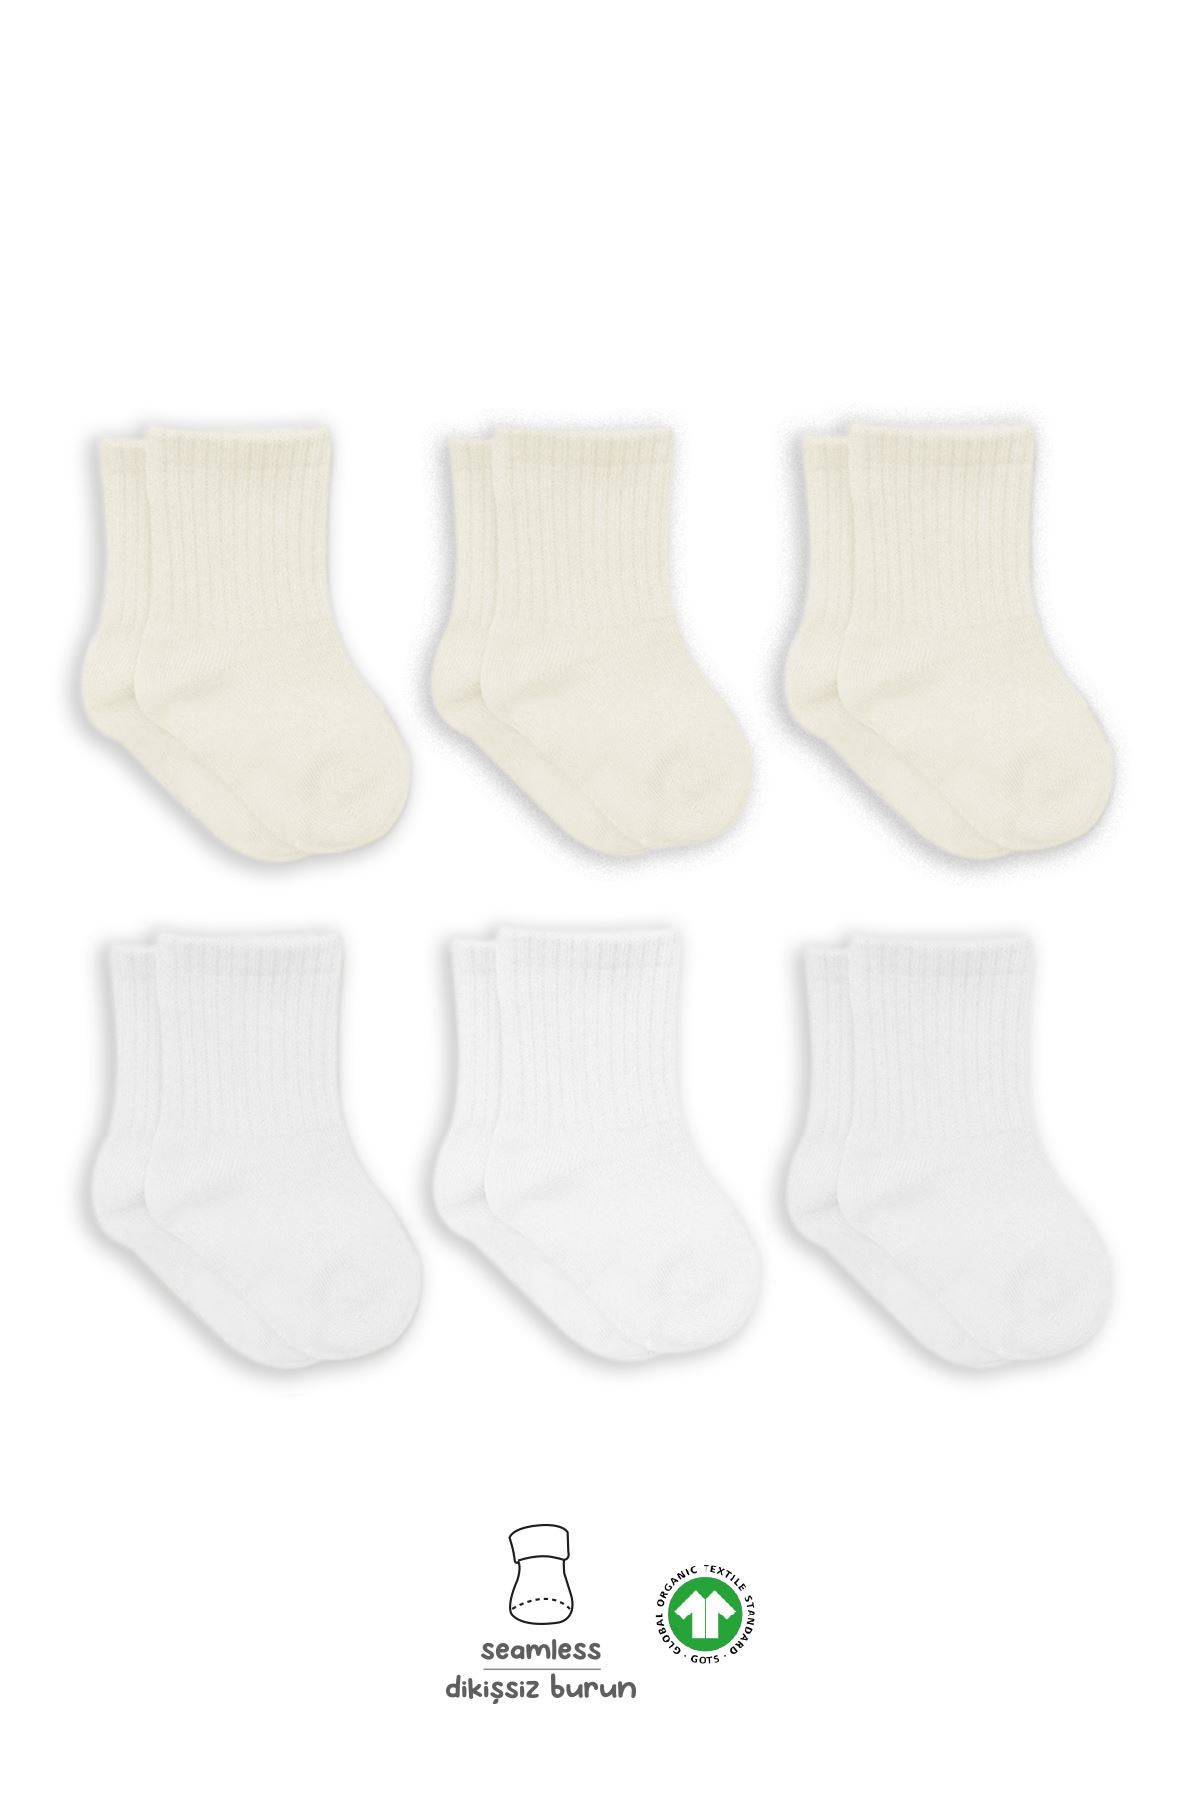 Bistyle 6lı Penye Bebek Çorabı 6015 Beyaz-Ekru